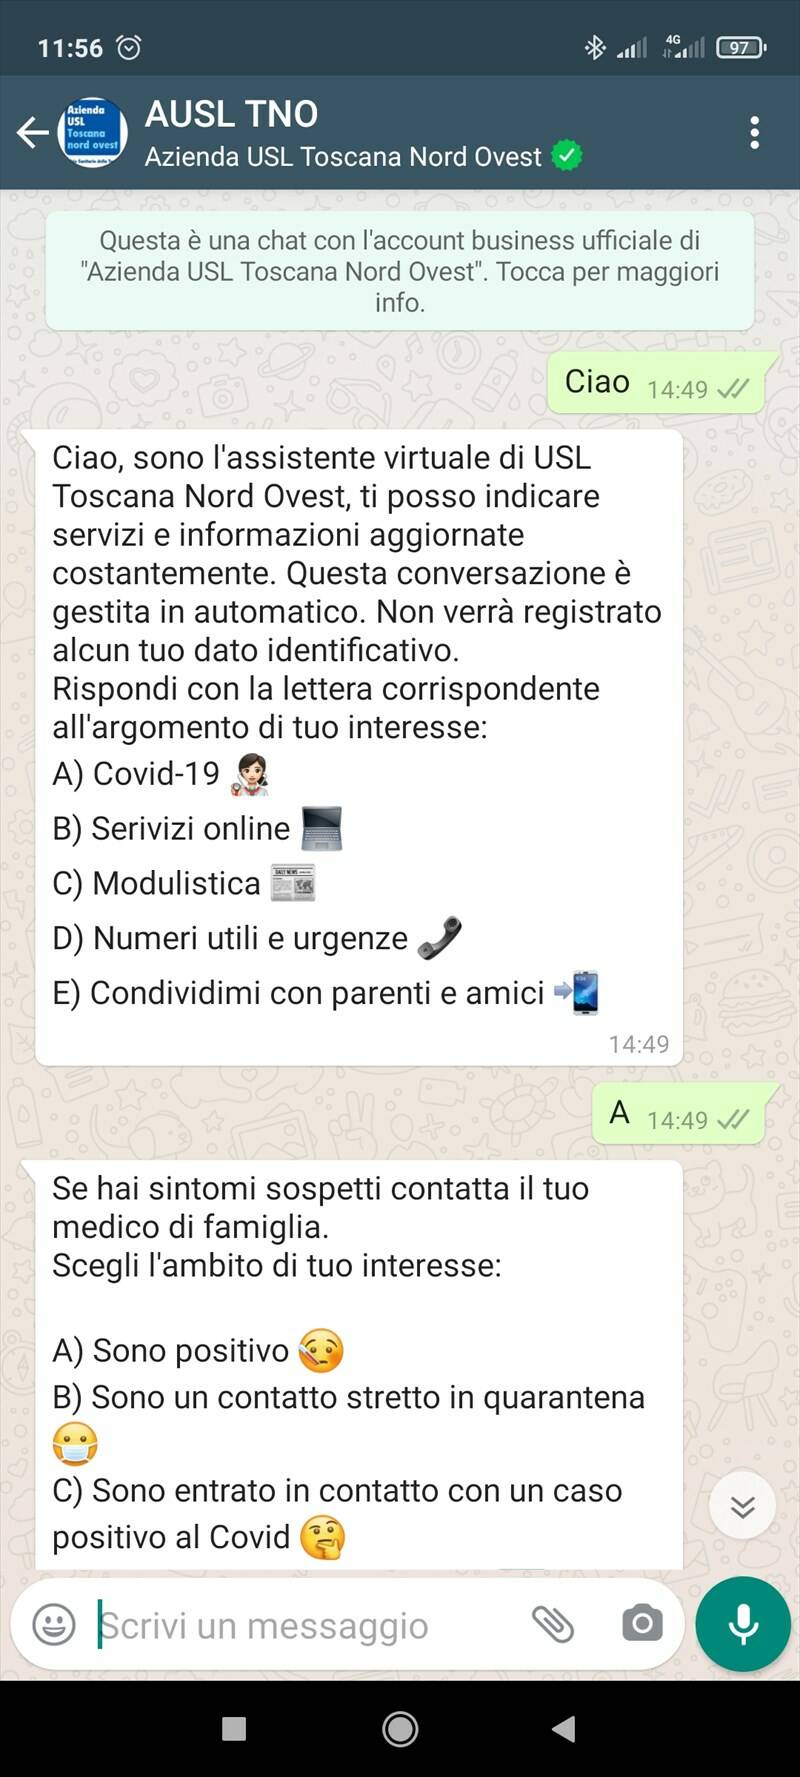 Contrasto al Covid: l’ASL Toscana nord ovest sperimenta per prima in Italia l’assistente virtuale di WhatsApp